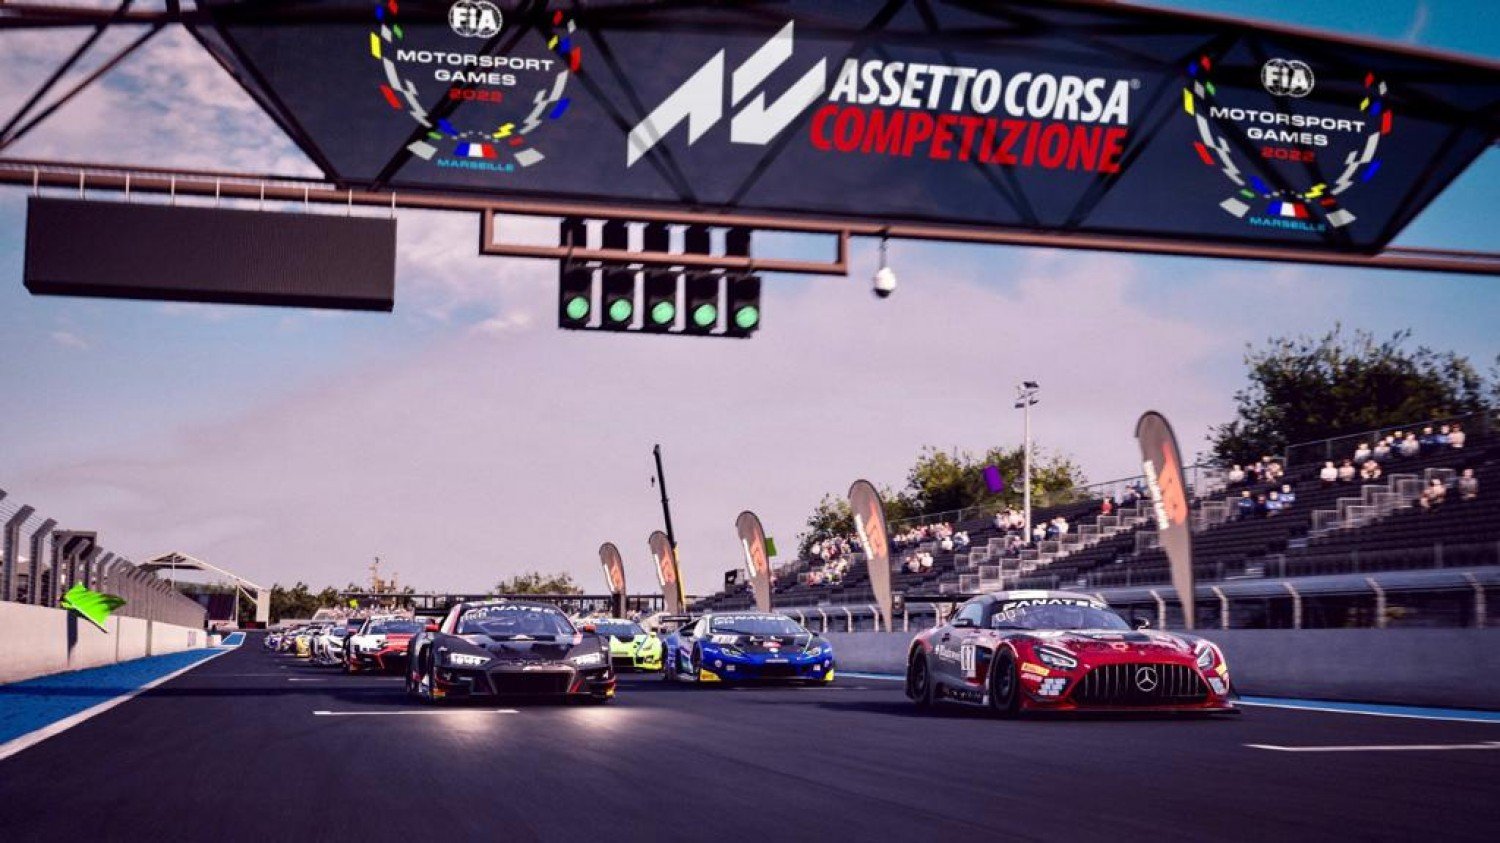 More information about "Assetto Corsa Competizione protagonista dei FIA Motorsport Games 2022 ad Ottobre"